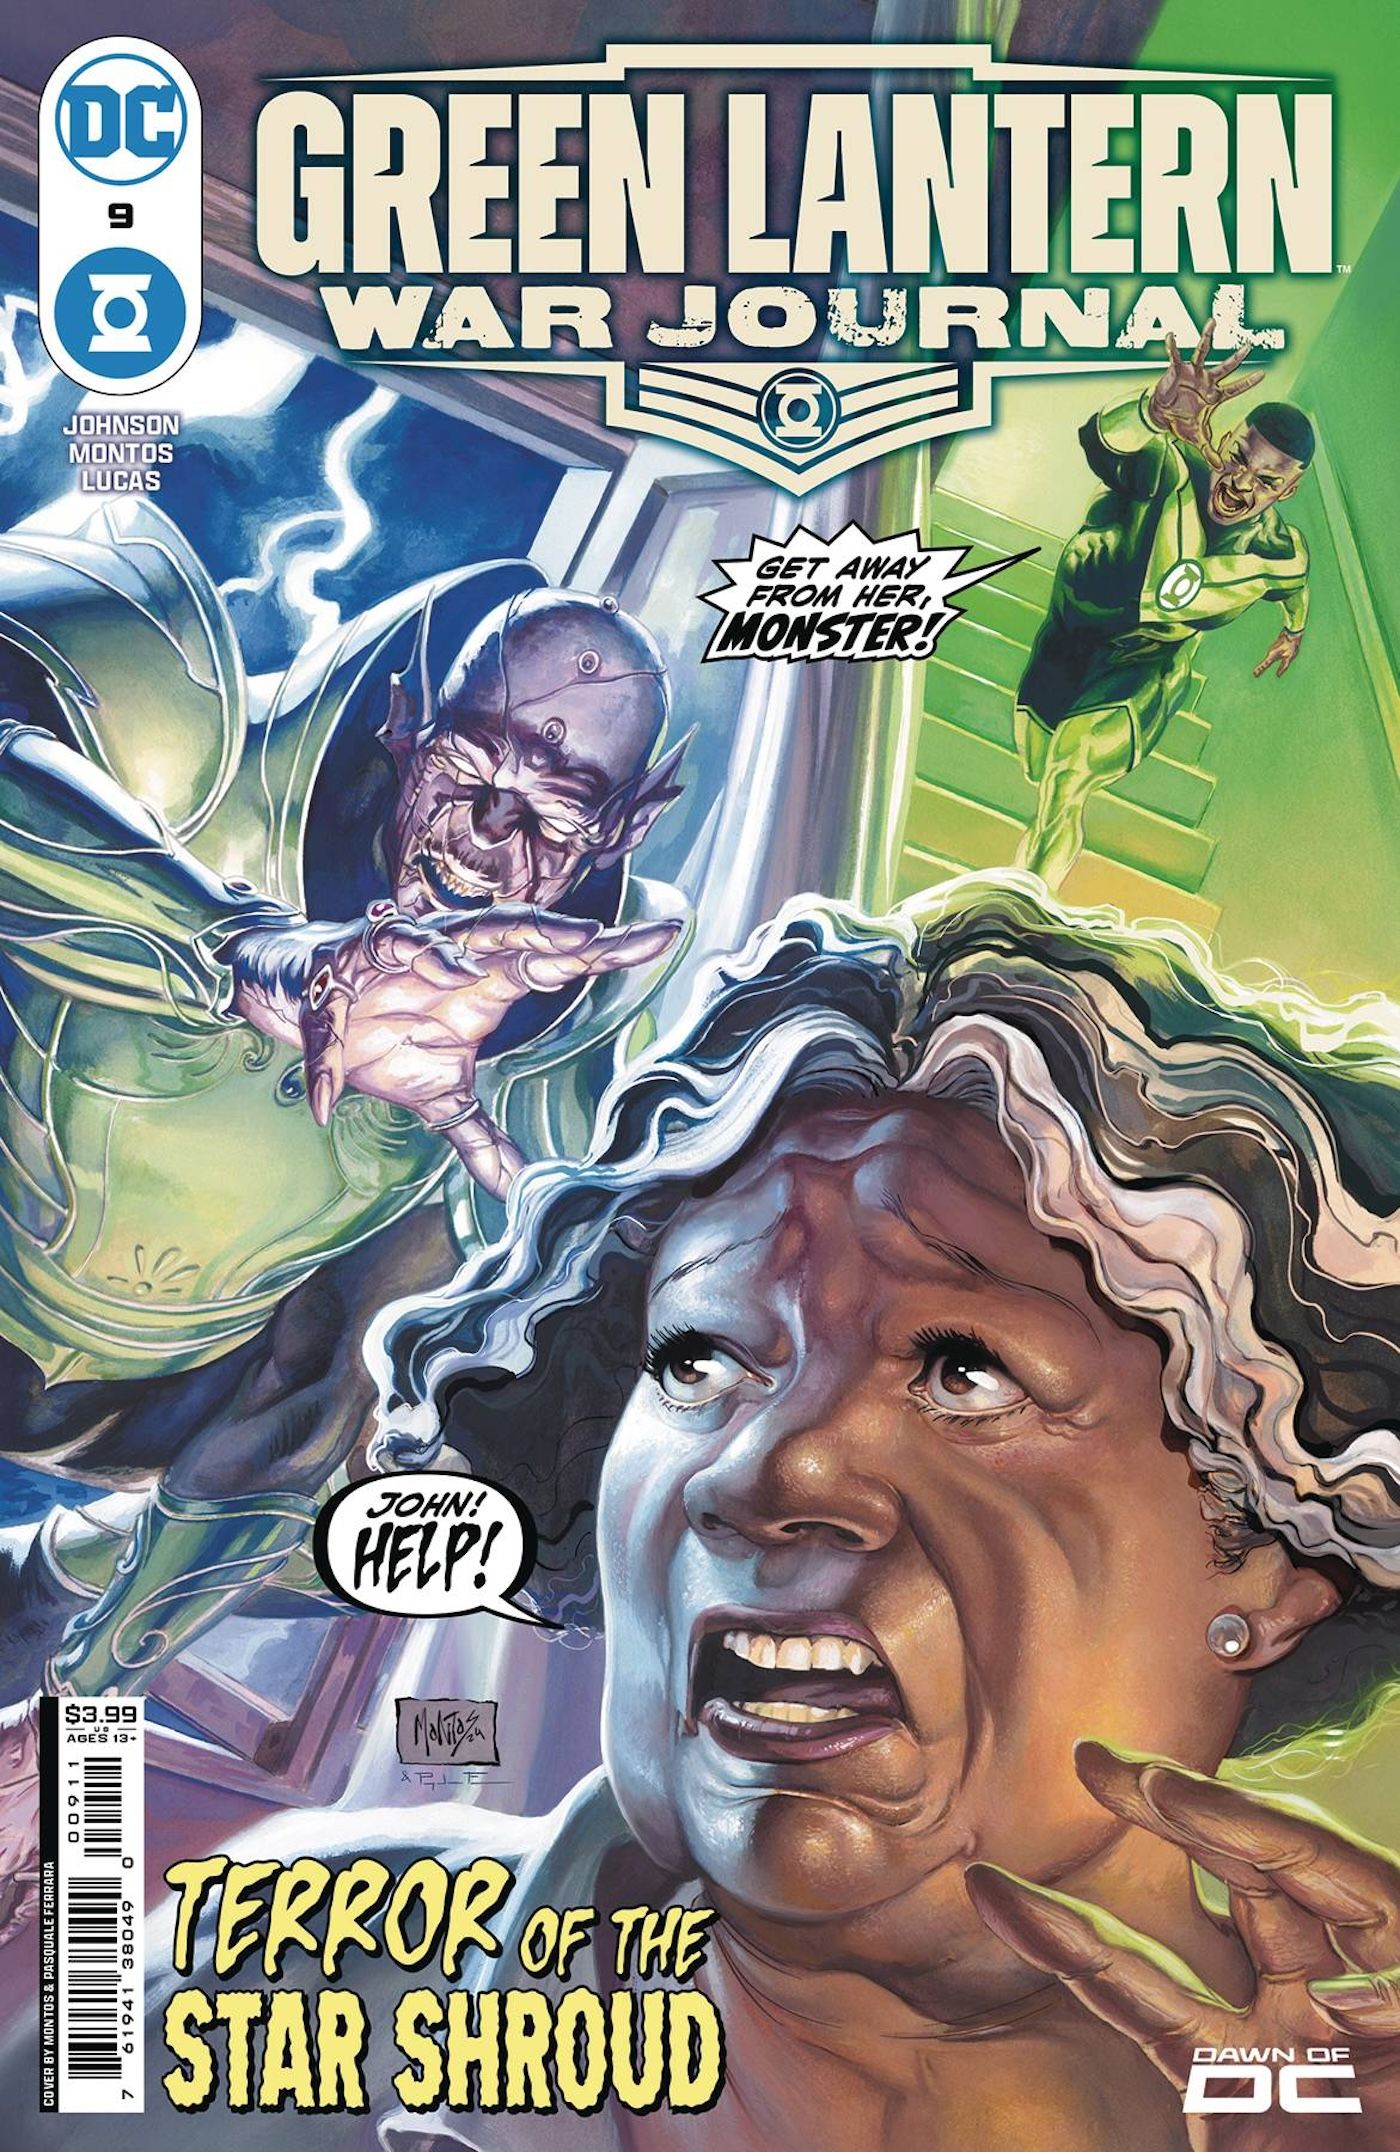 Green Lantern War Journal 9 Capa principal: John Stewart desce as escadas para salvar sua mãe de um alienígena.